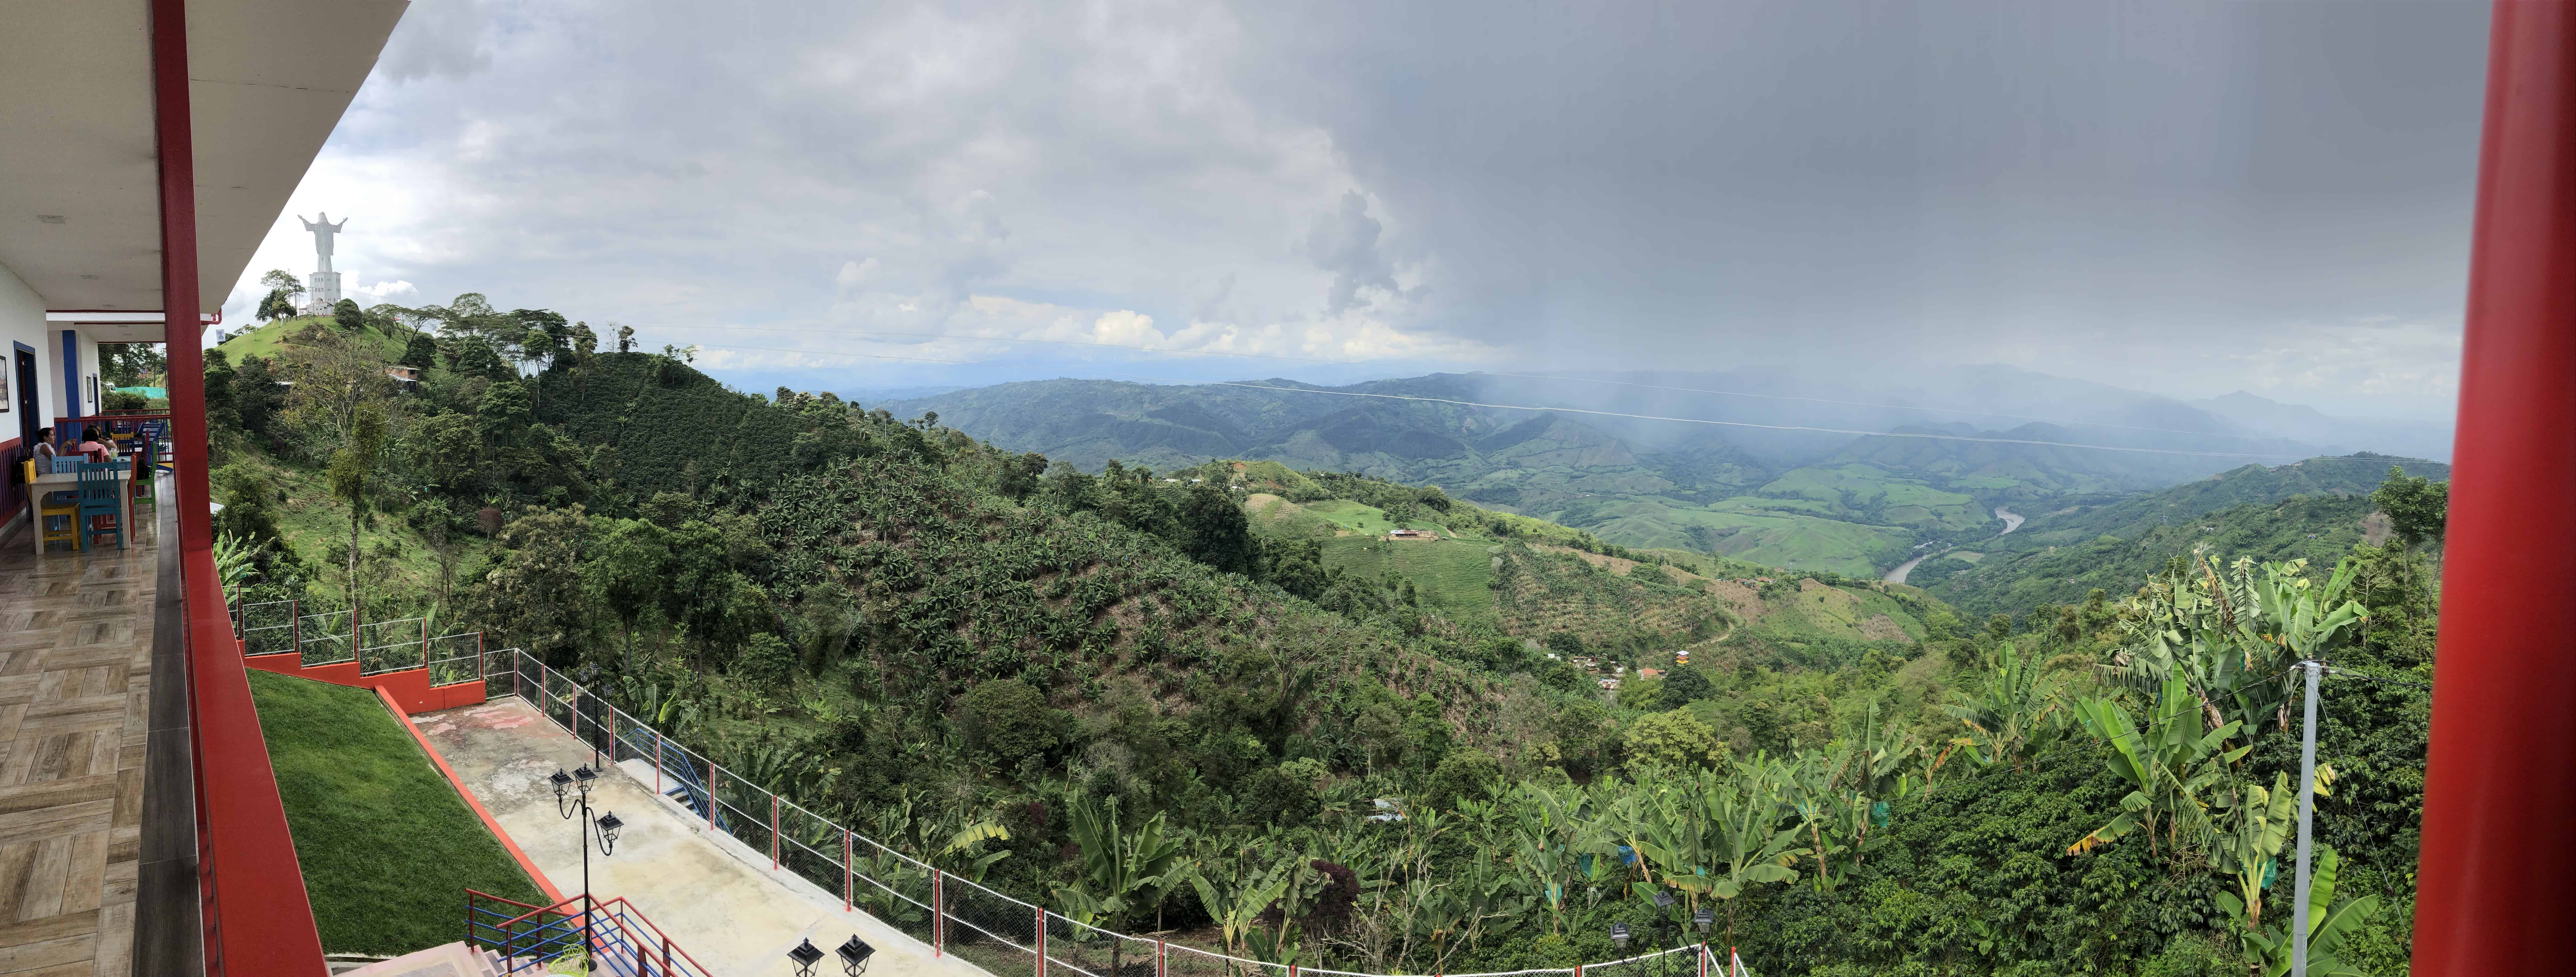 View from Rosa María in Belalcázar, Caldas, Colombia